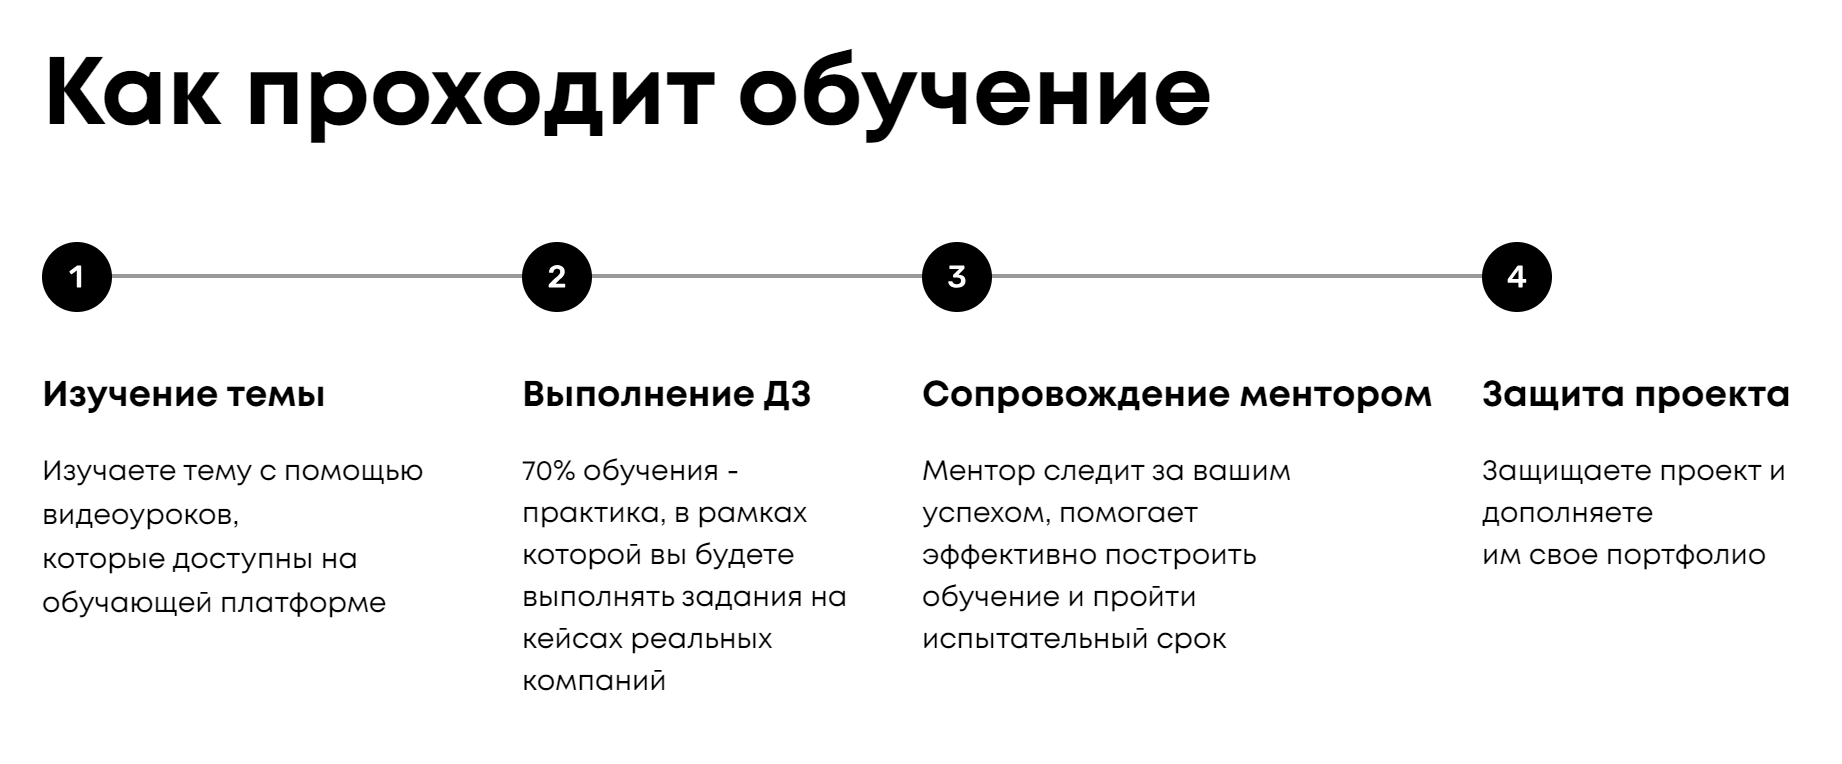 Схема обучения. Источник: productstar.ru